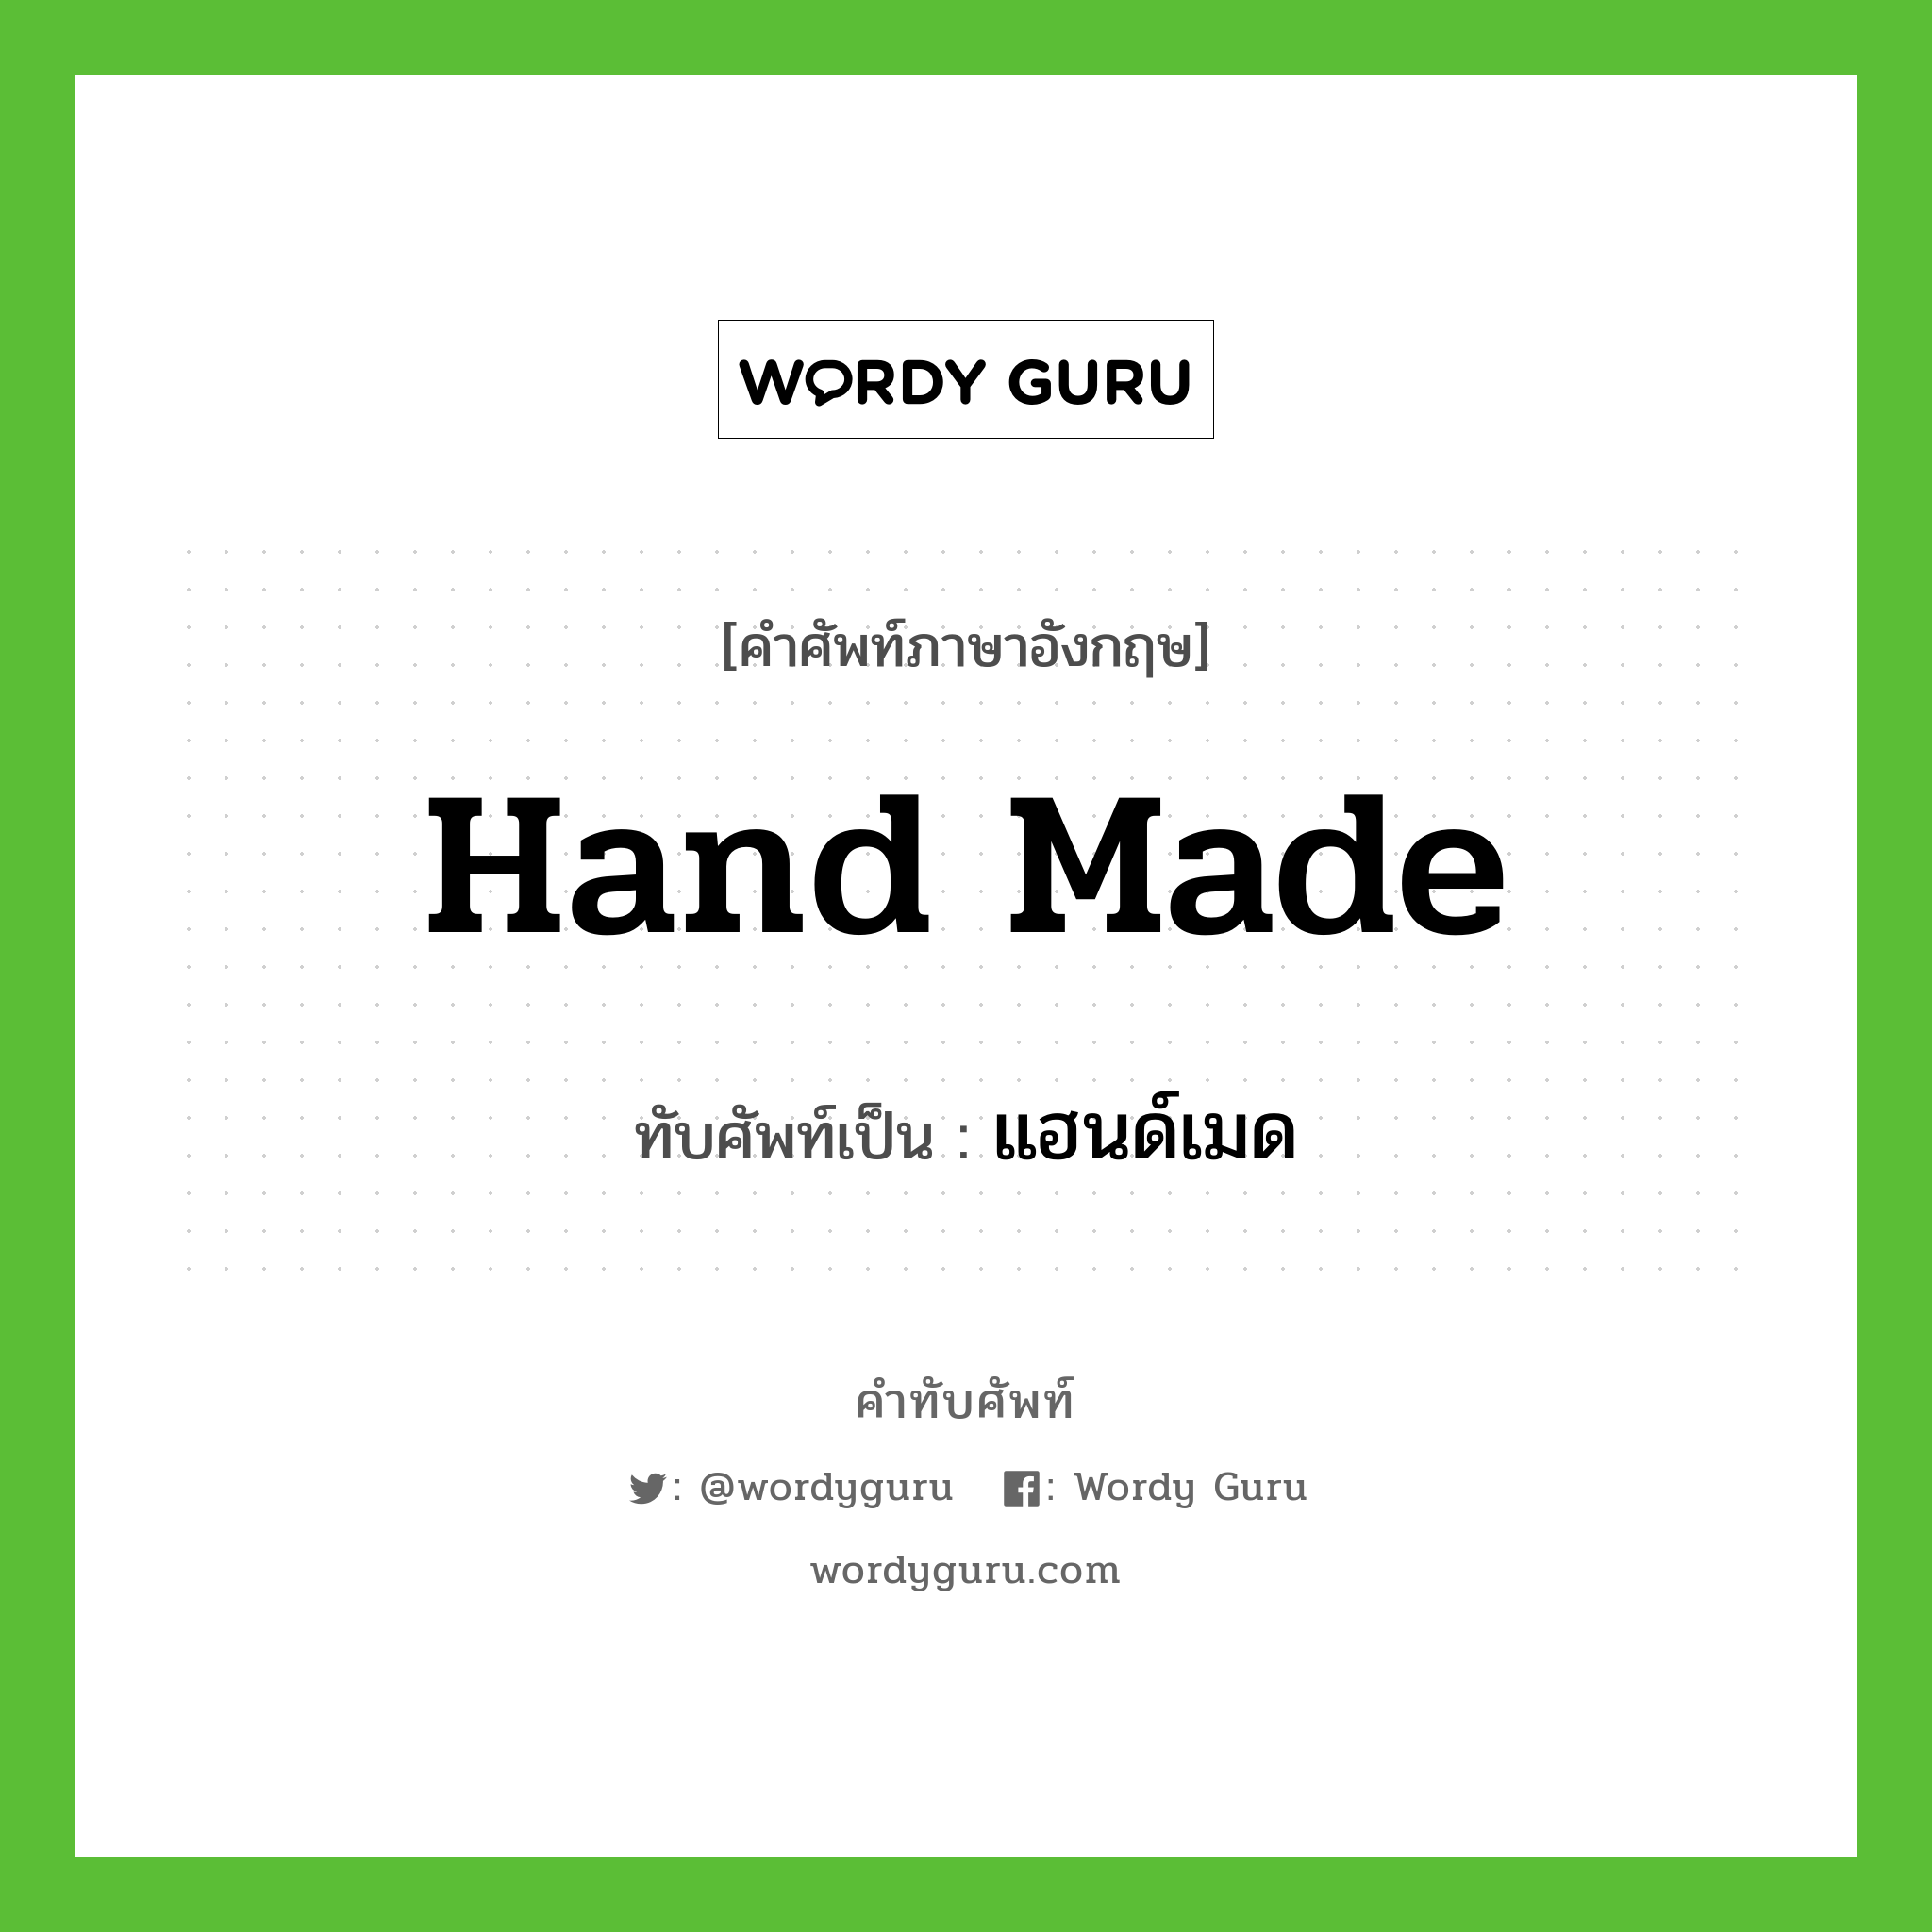 hand made เขียนเป็นคำไทยว่าอะไร?, คำศัพท์ภาษาอังกฤษ hand made ทับศัพท์เป็น แฮนด์เมด